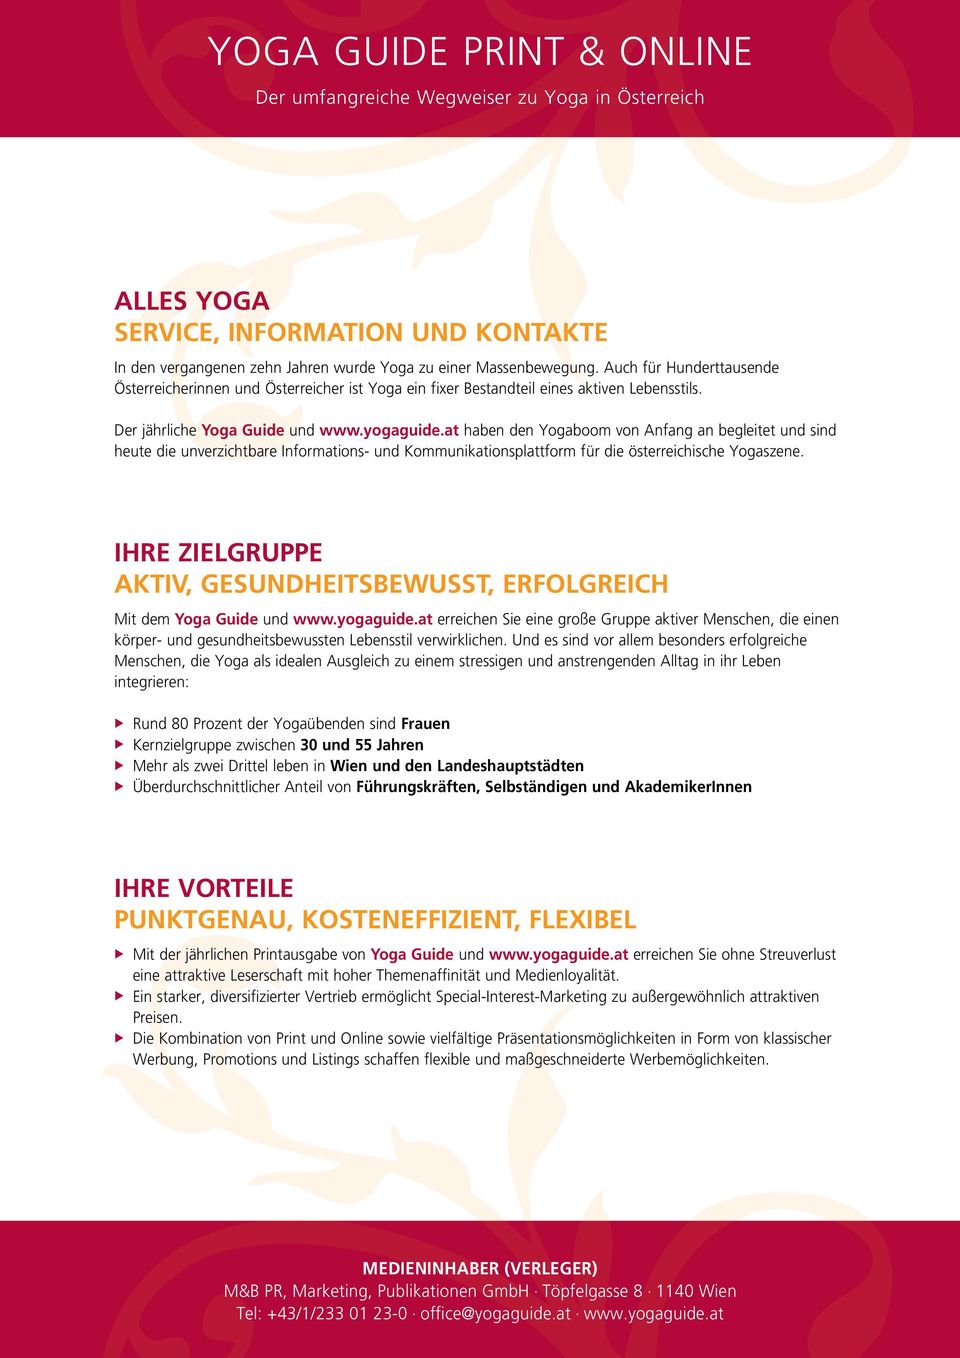 Der jährliche Yoga Guide und haben den Yogaboom von Anfang an begleitet und sind heute die unverzichtbare Informations- und Kommunikationsplattform für die österreichische Yogaszene.